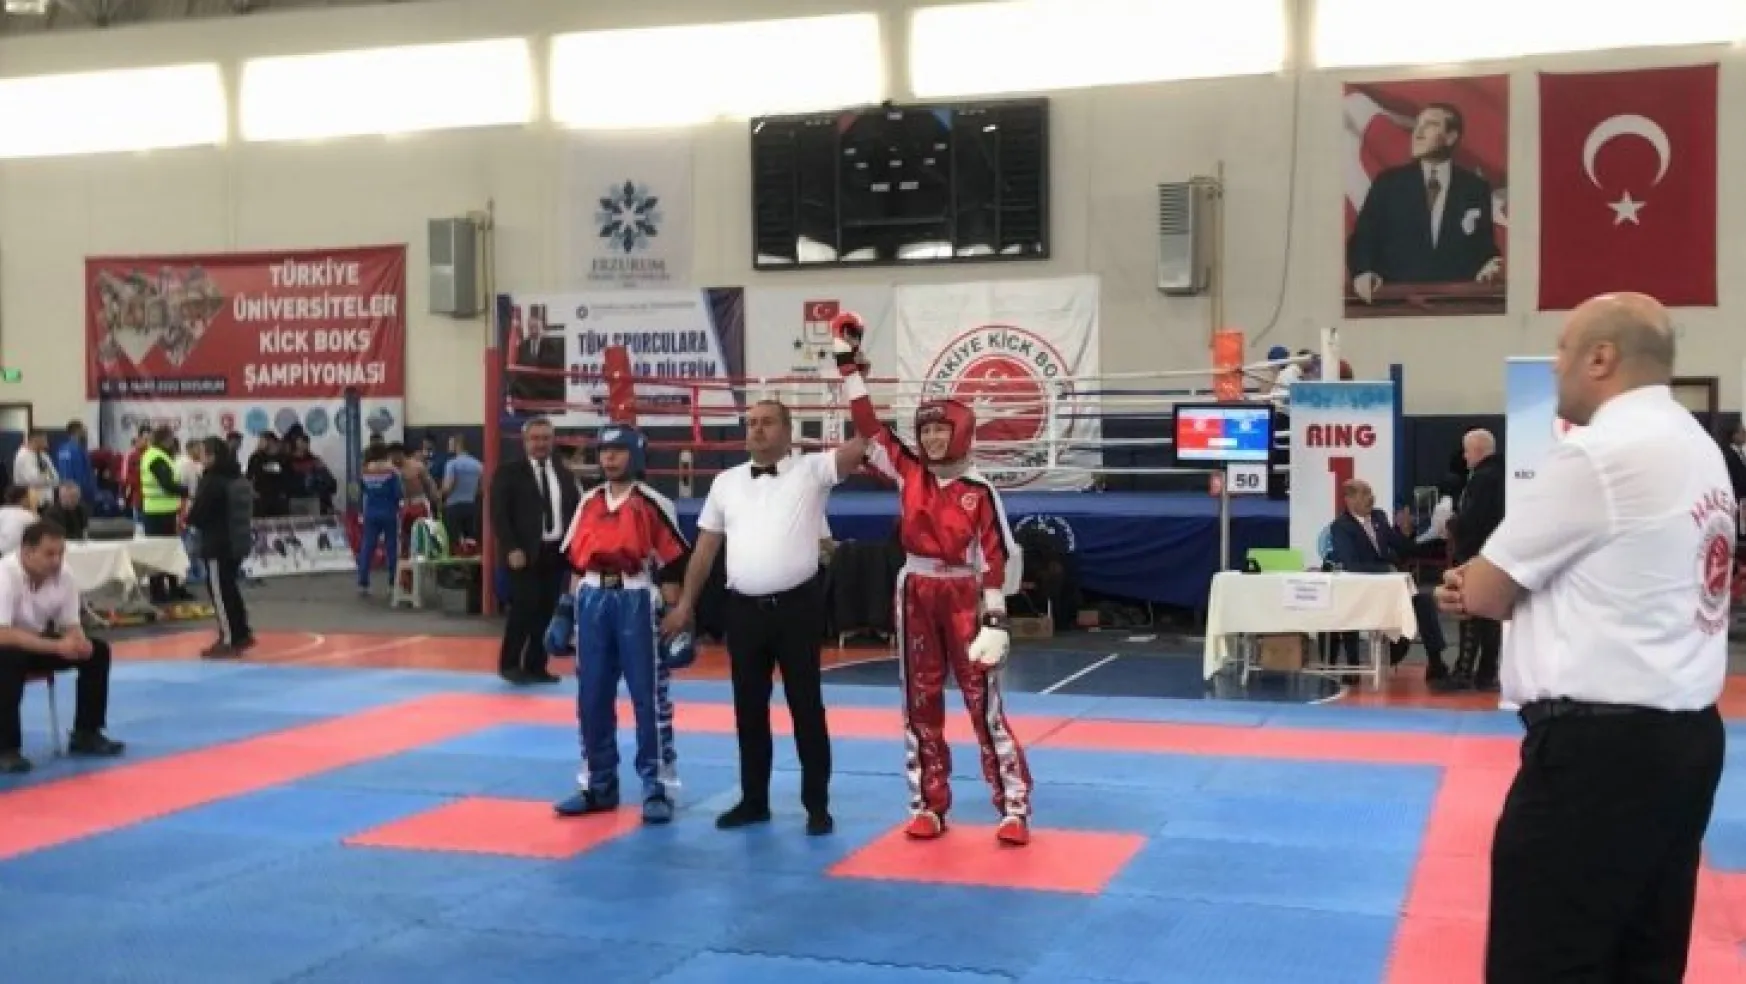 Kapadokya Üniversitesinden Kick Boks Şampiyonasında gururlandıran sonuç